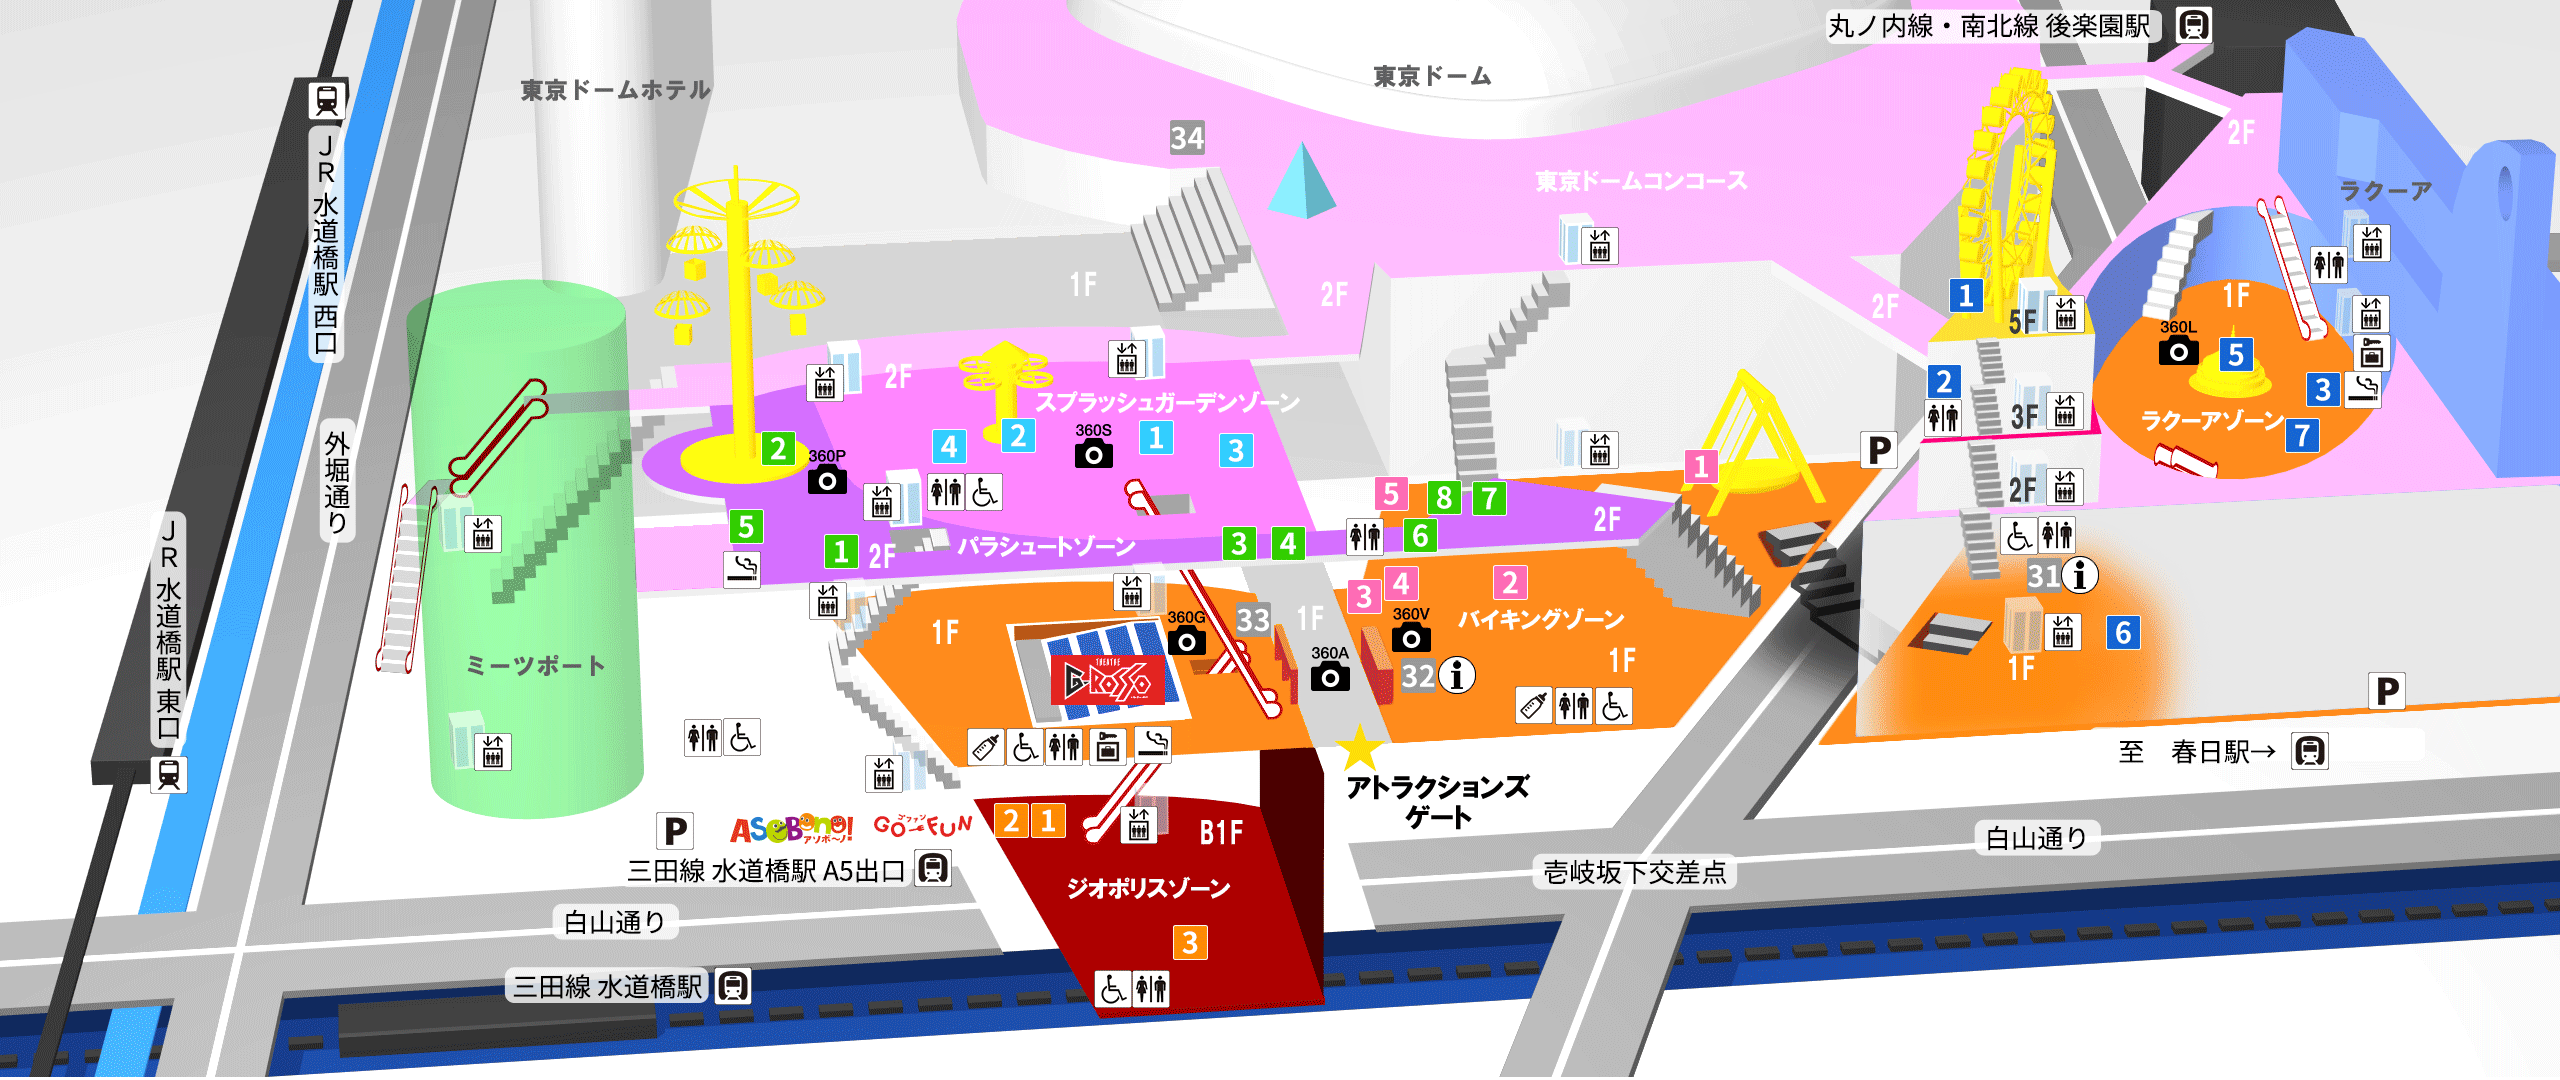 アクセス・園内マップ | TDCA | 東京ドームシティアトラクションズ